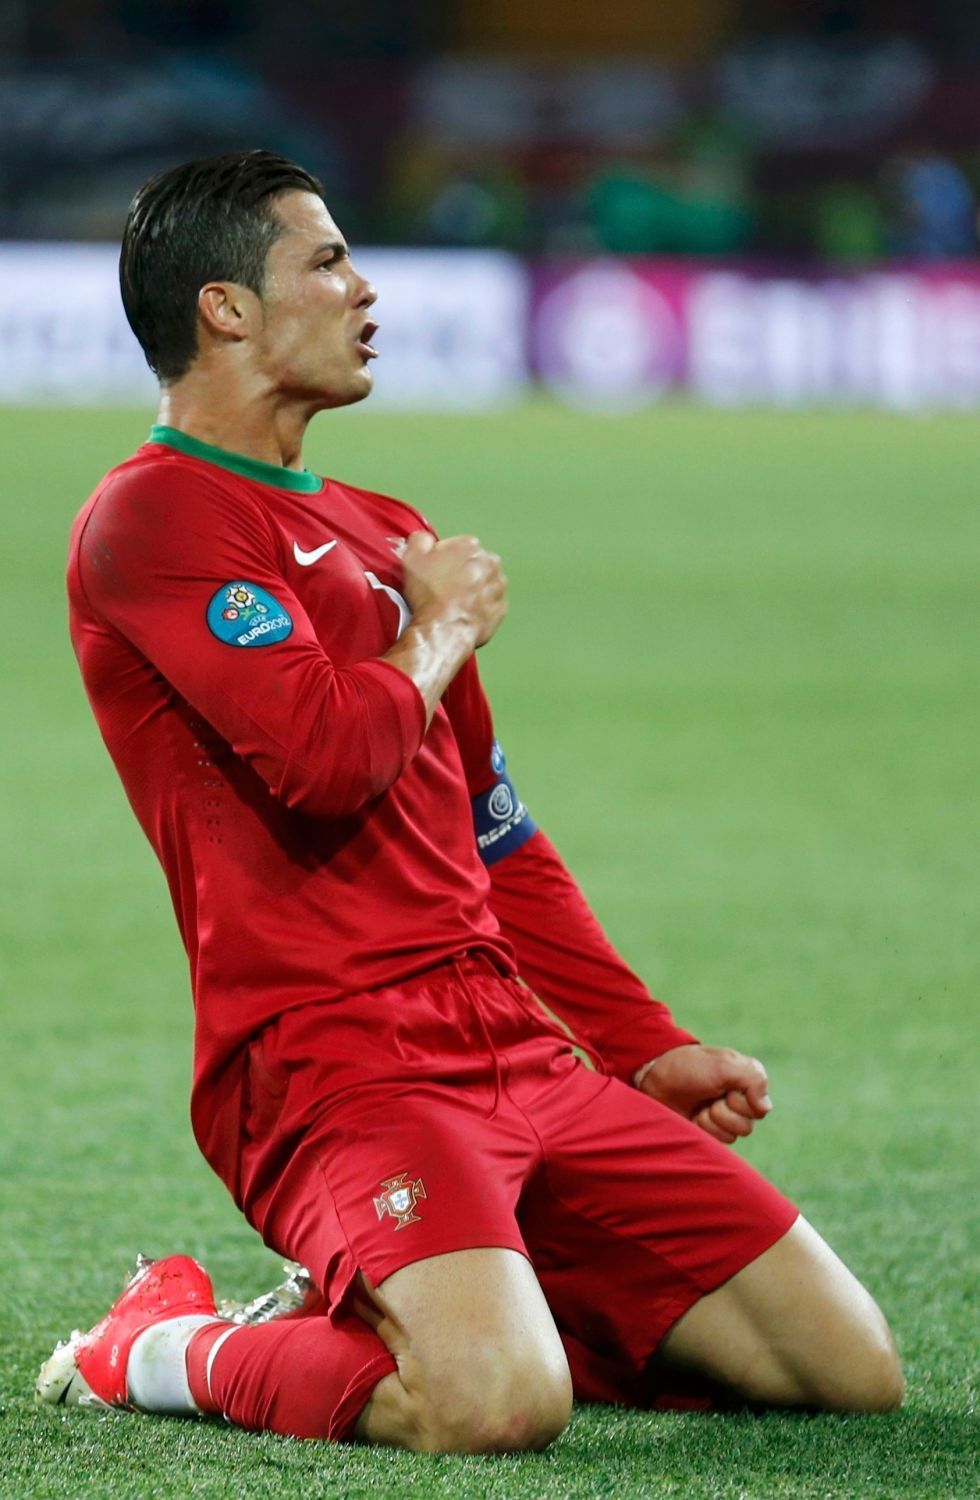 Portugalský fotbalista Cristiano Ronaldo slaví svůj druhý gól v utkání skupiny B s Nizozemskem na Euru 2012